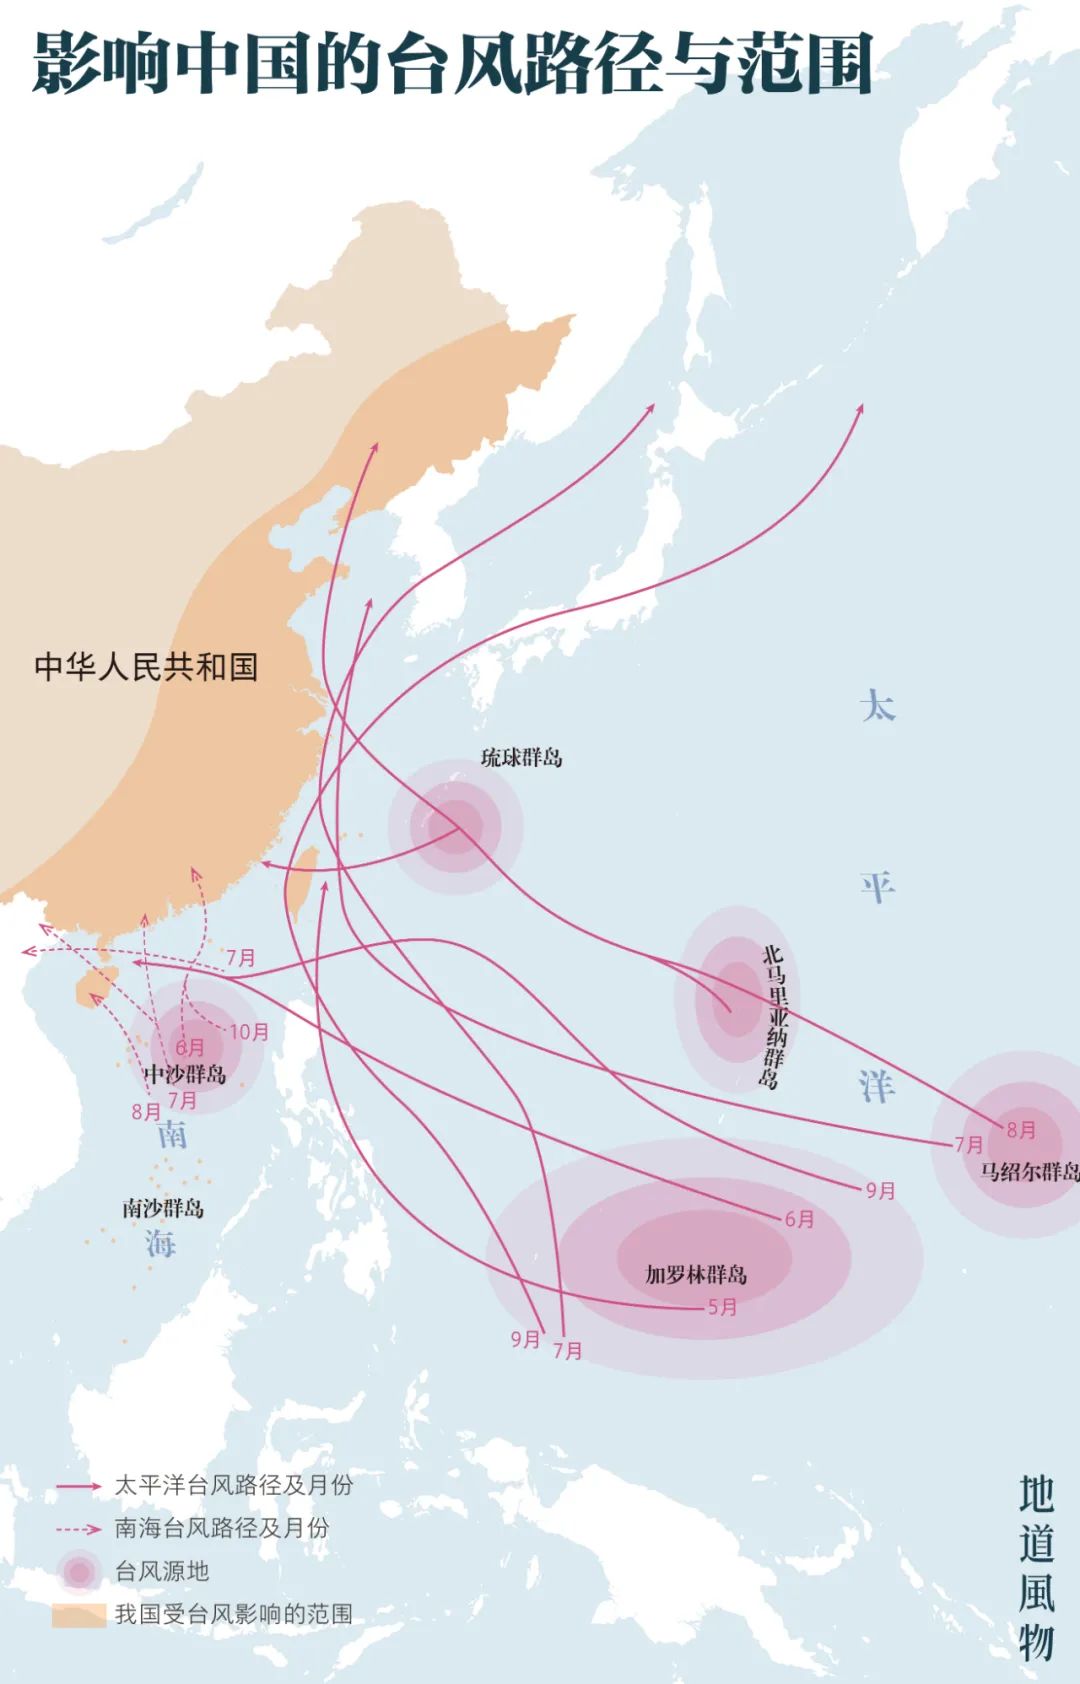 ▲ 影响中国的台风路径与范围。制图/王跃